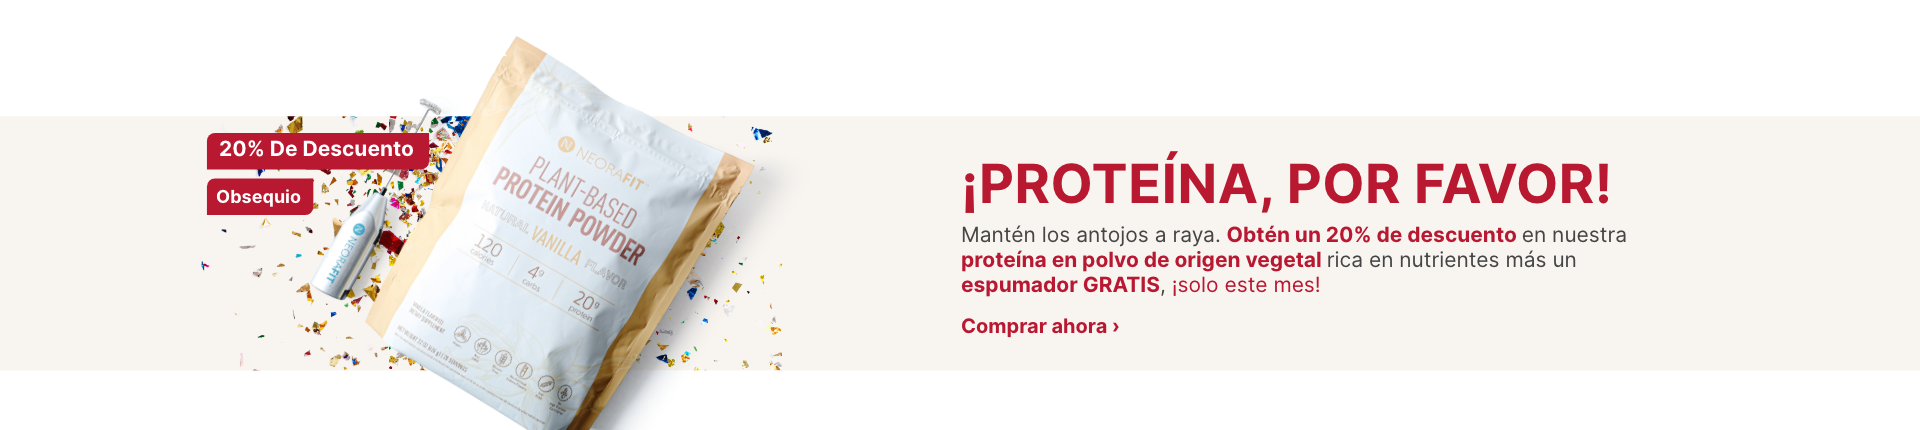 Proteína en polvo de origen vegetal NeoraFit con espumador GRATIS en confeti